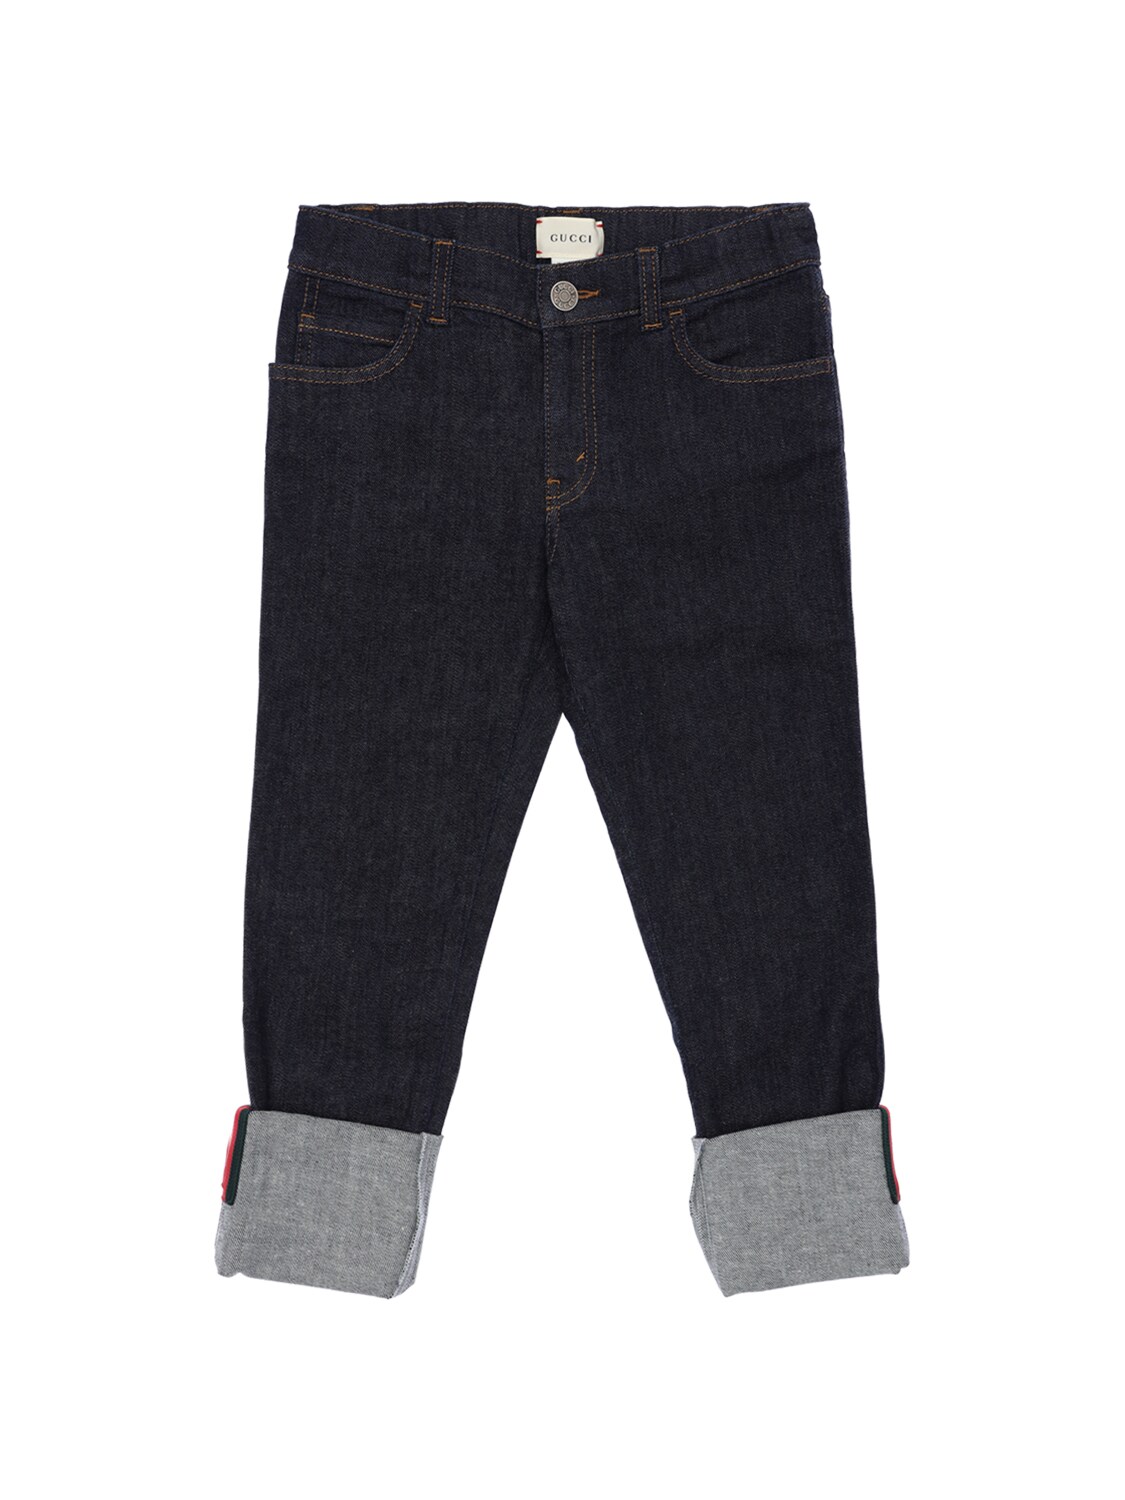 Gucci Kids' Stretch Cotton Denim Jeans W/ Web Detail